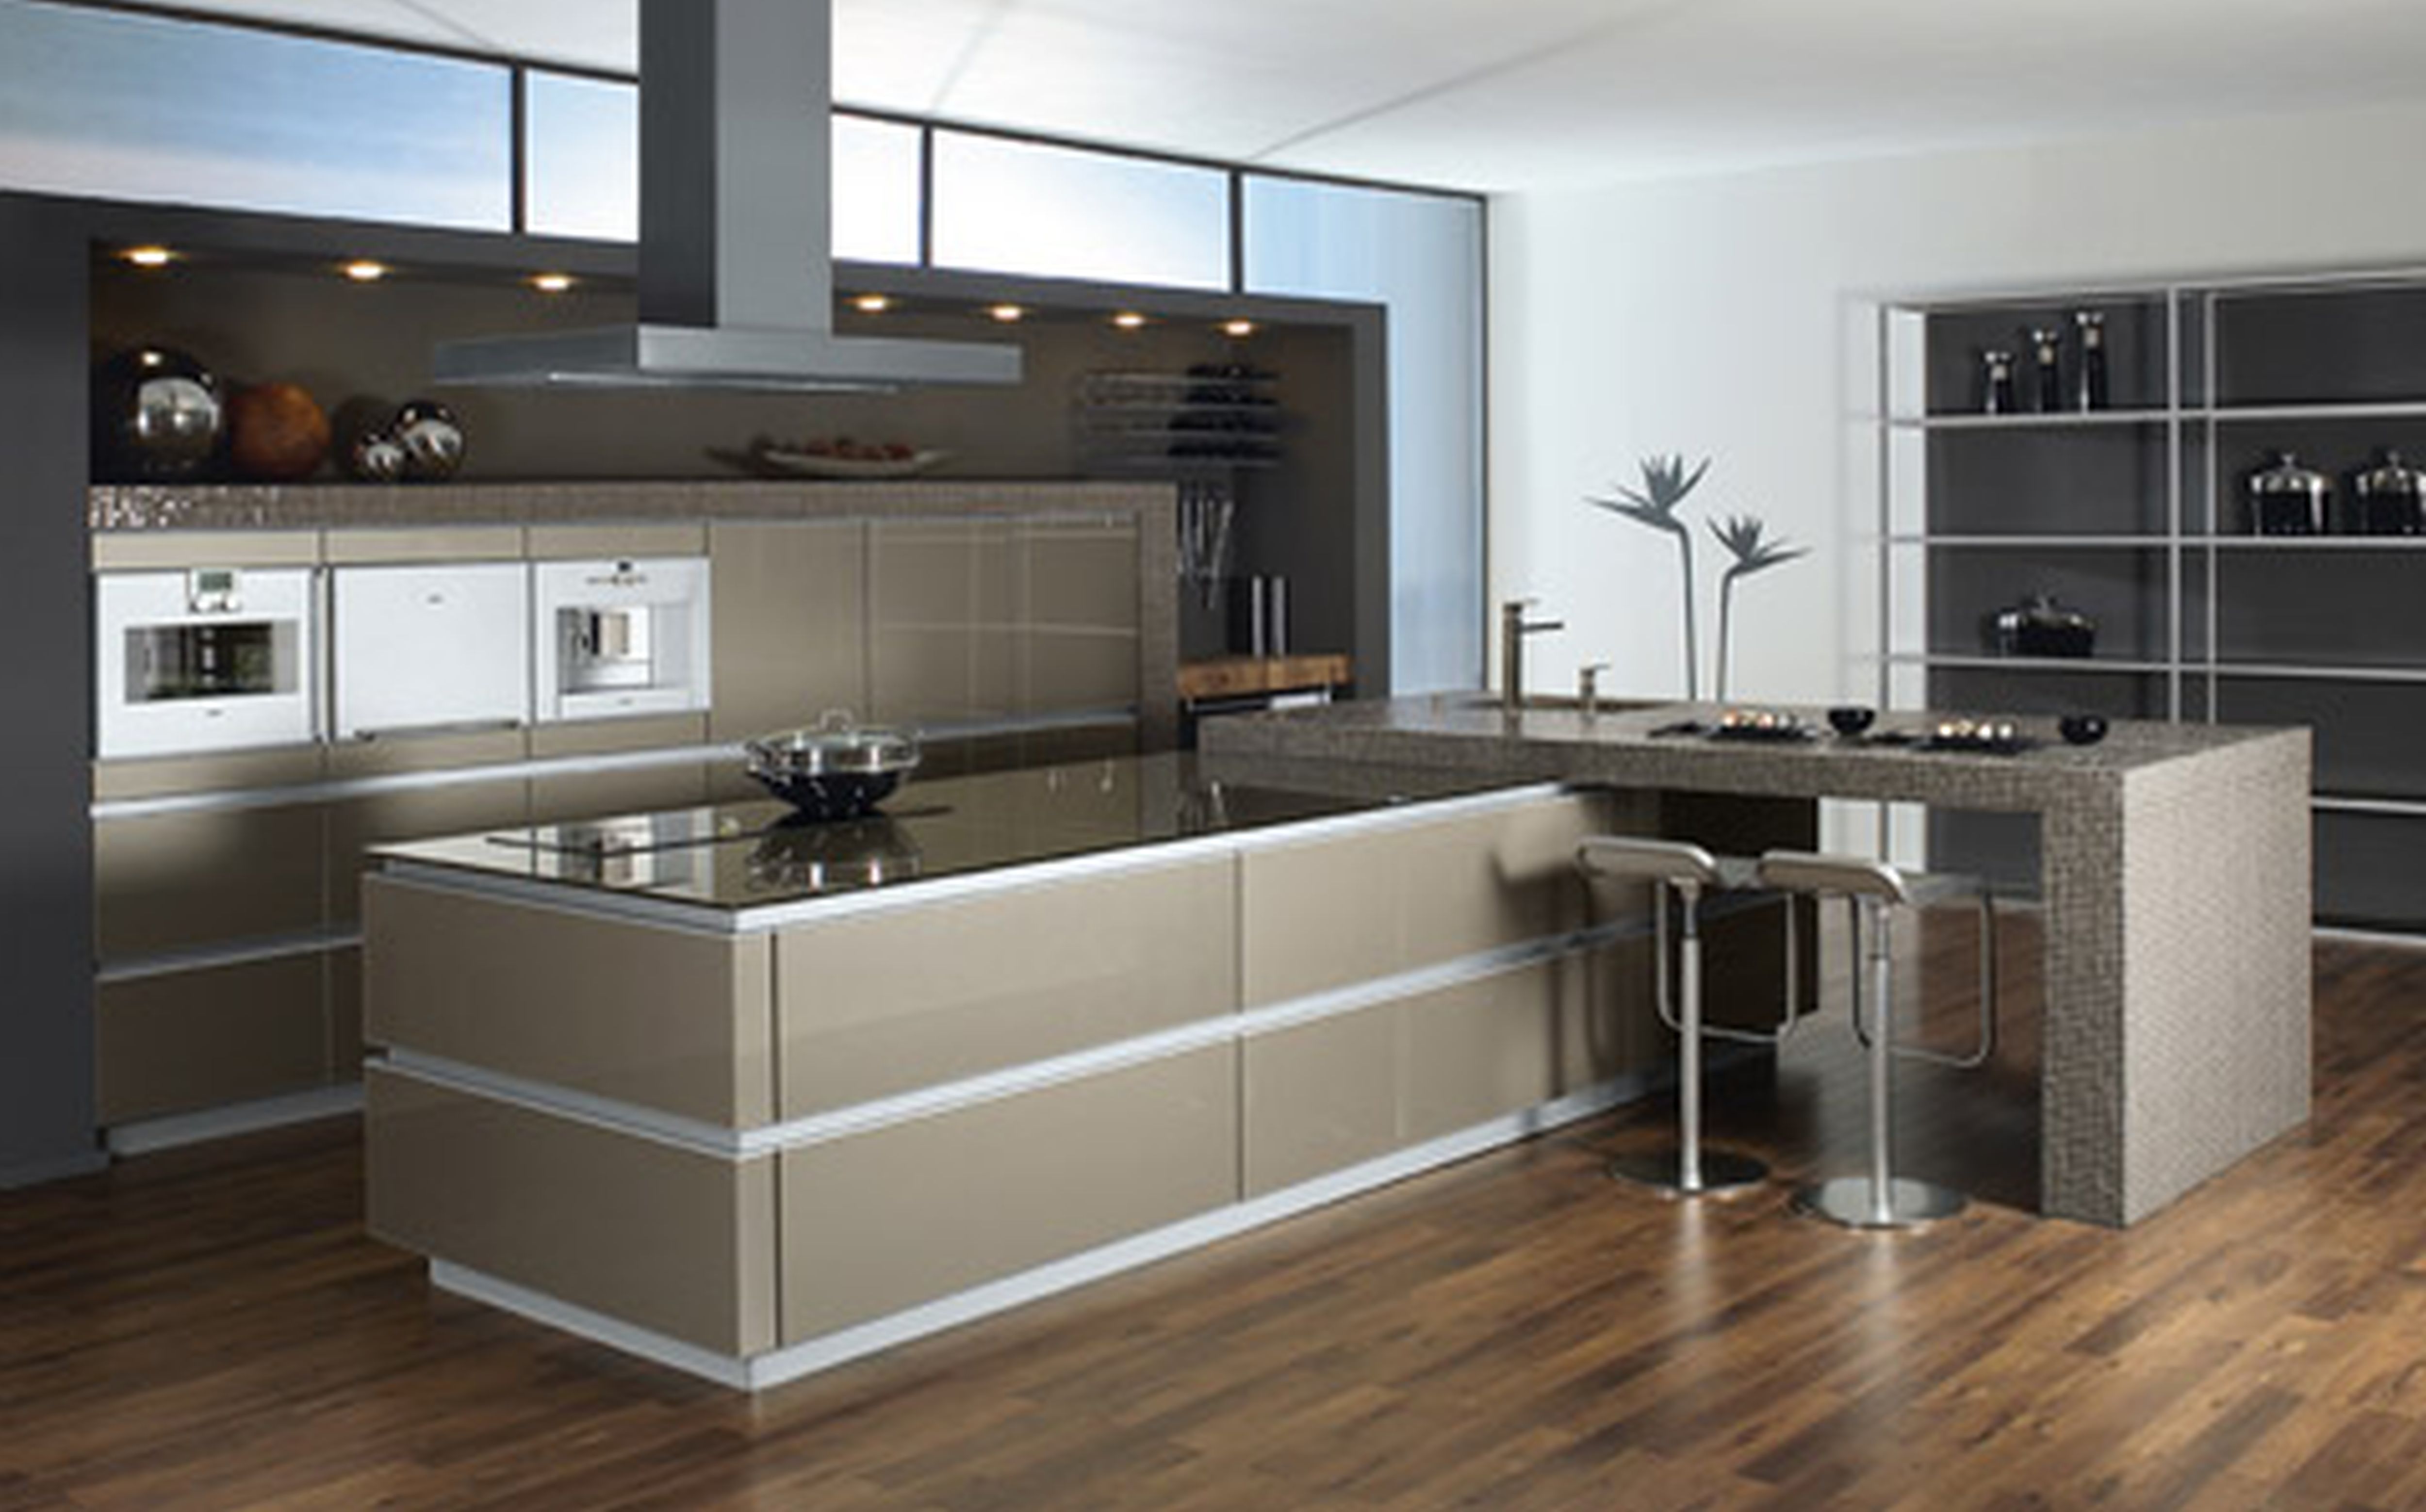 35 Modern Kitchen Design Inspiration